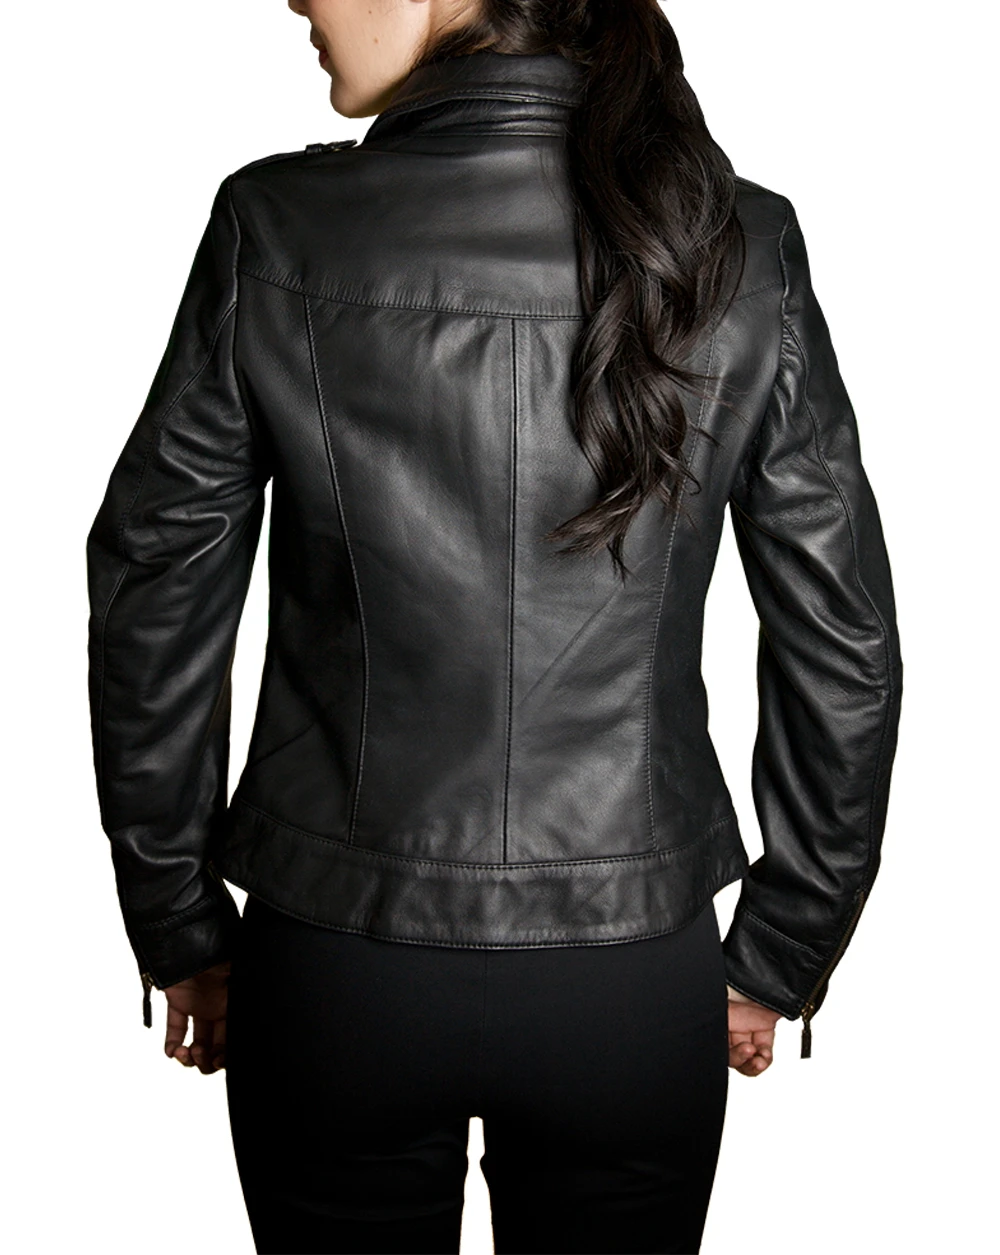 Buy Rouen Leather Jacket